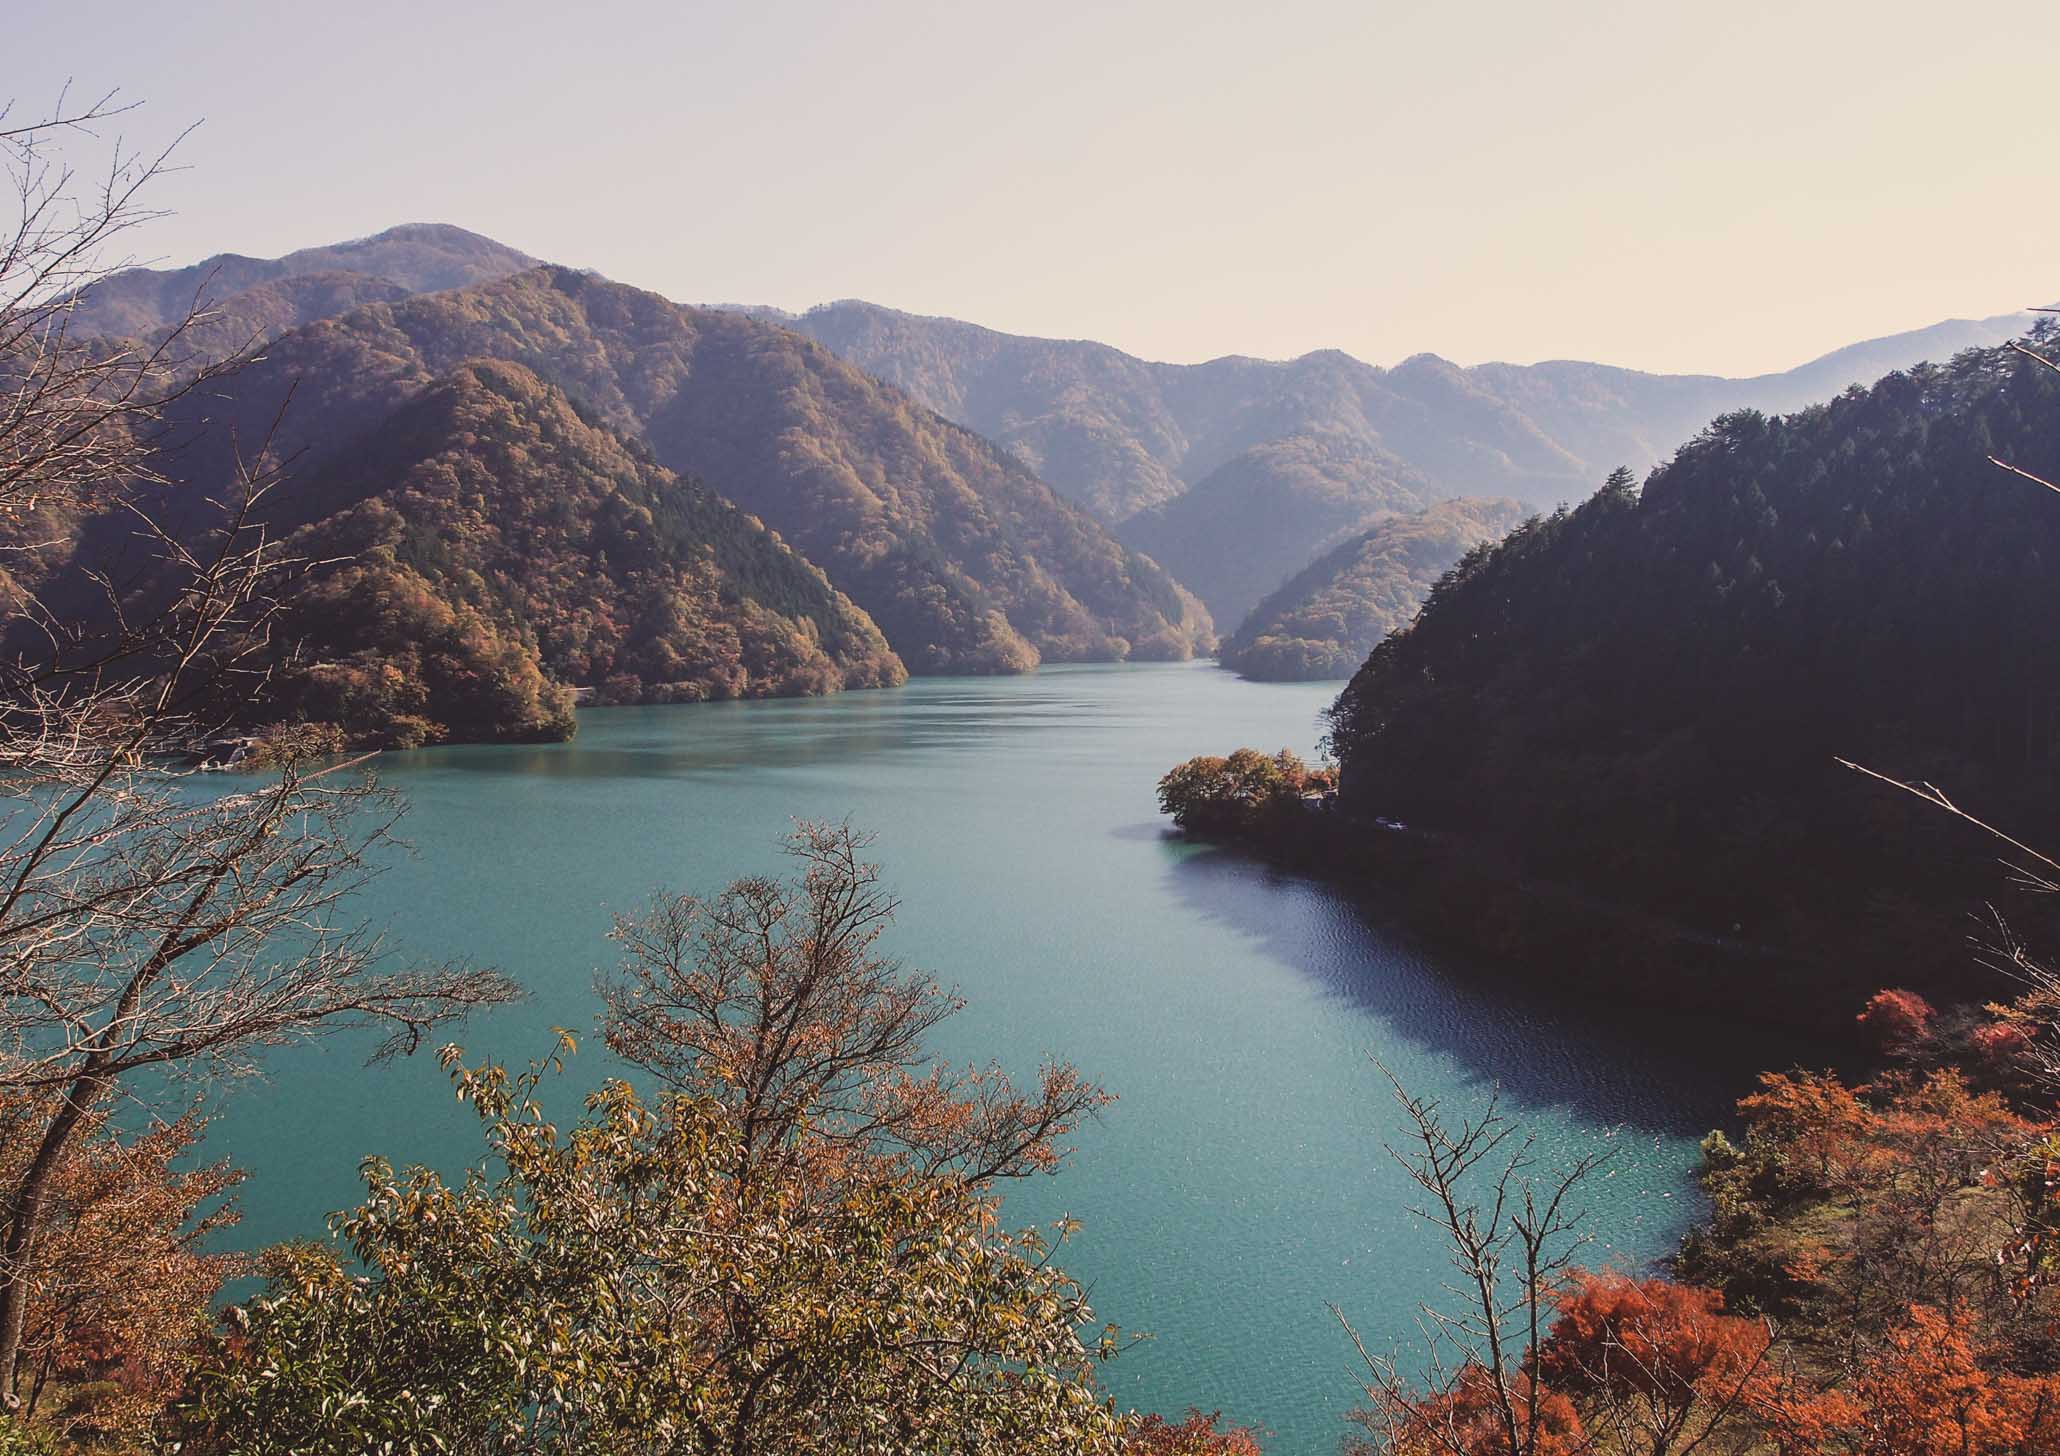 Things to do in Okutama Japan #3 - Relax at Lake Okutama